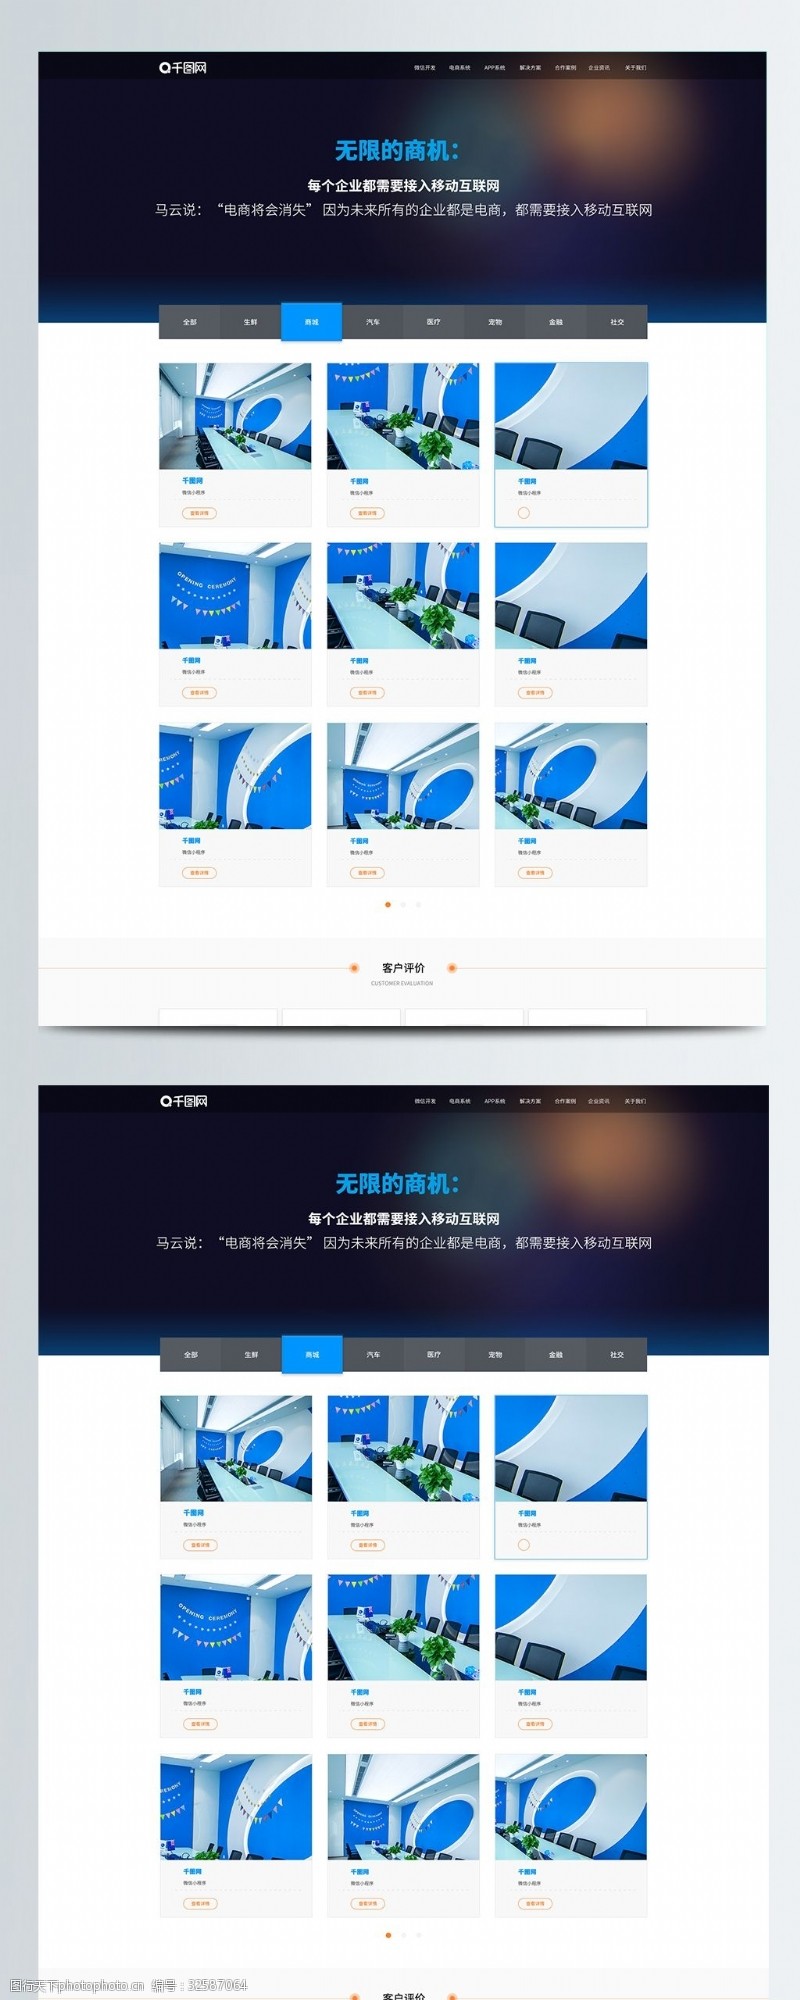 蓝色科技互联网企业官方网站案例界面设计